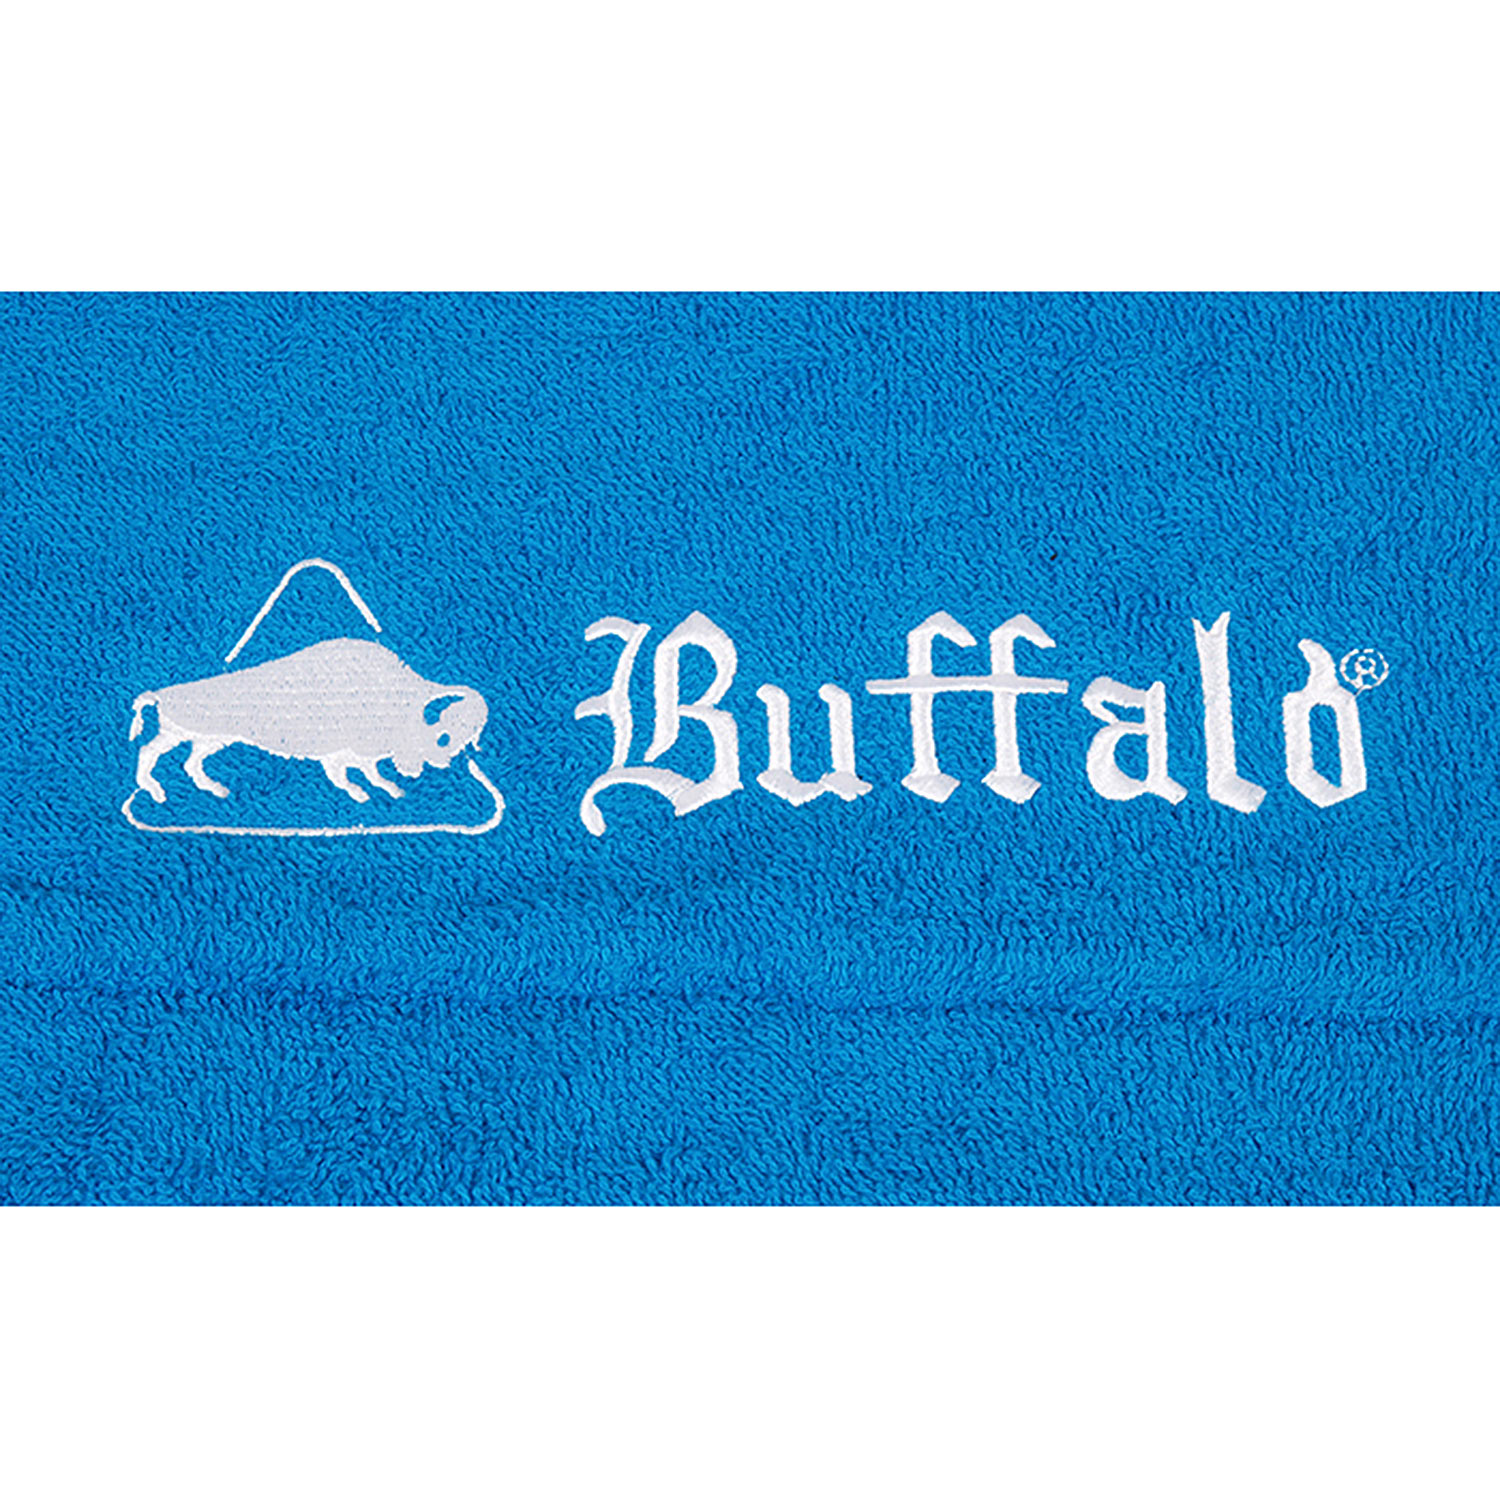 Buffalo towel Blue w/ sleeve